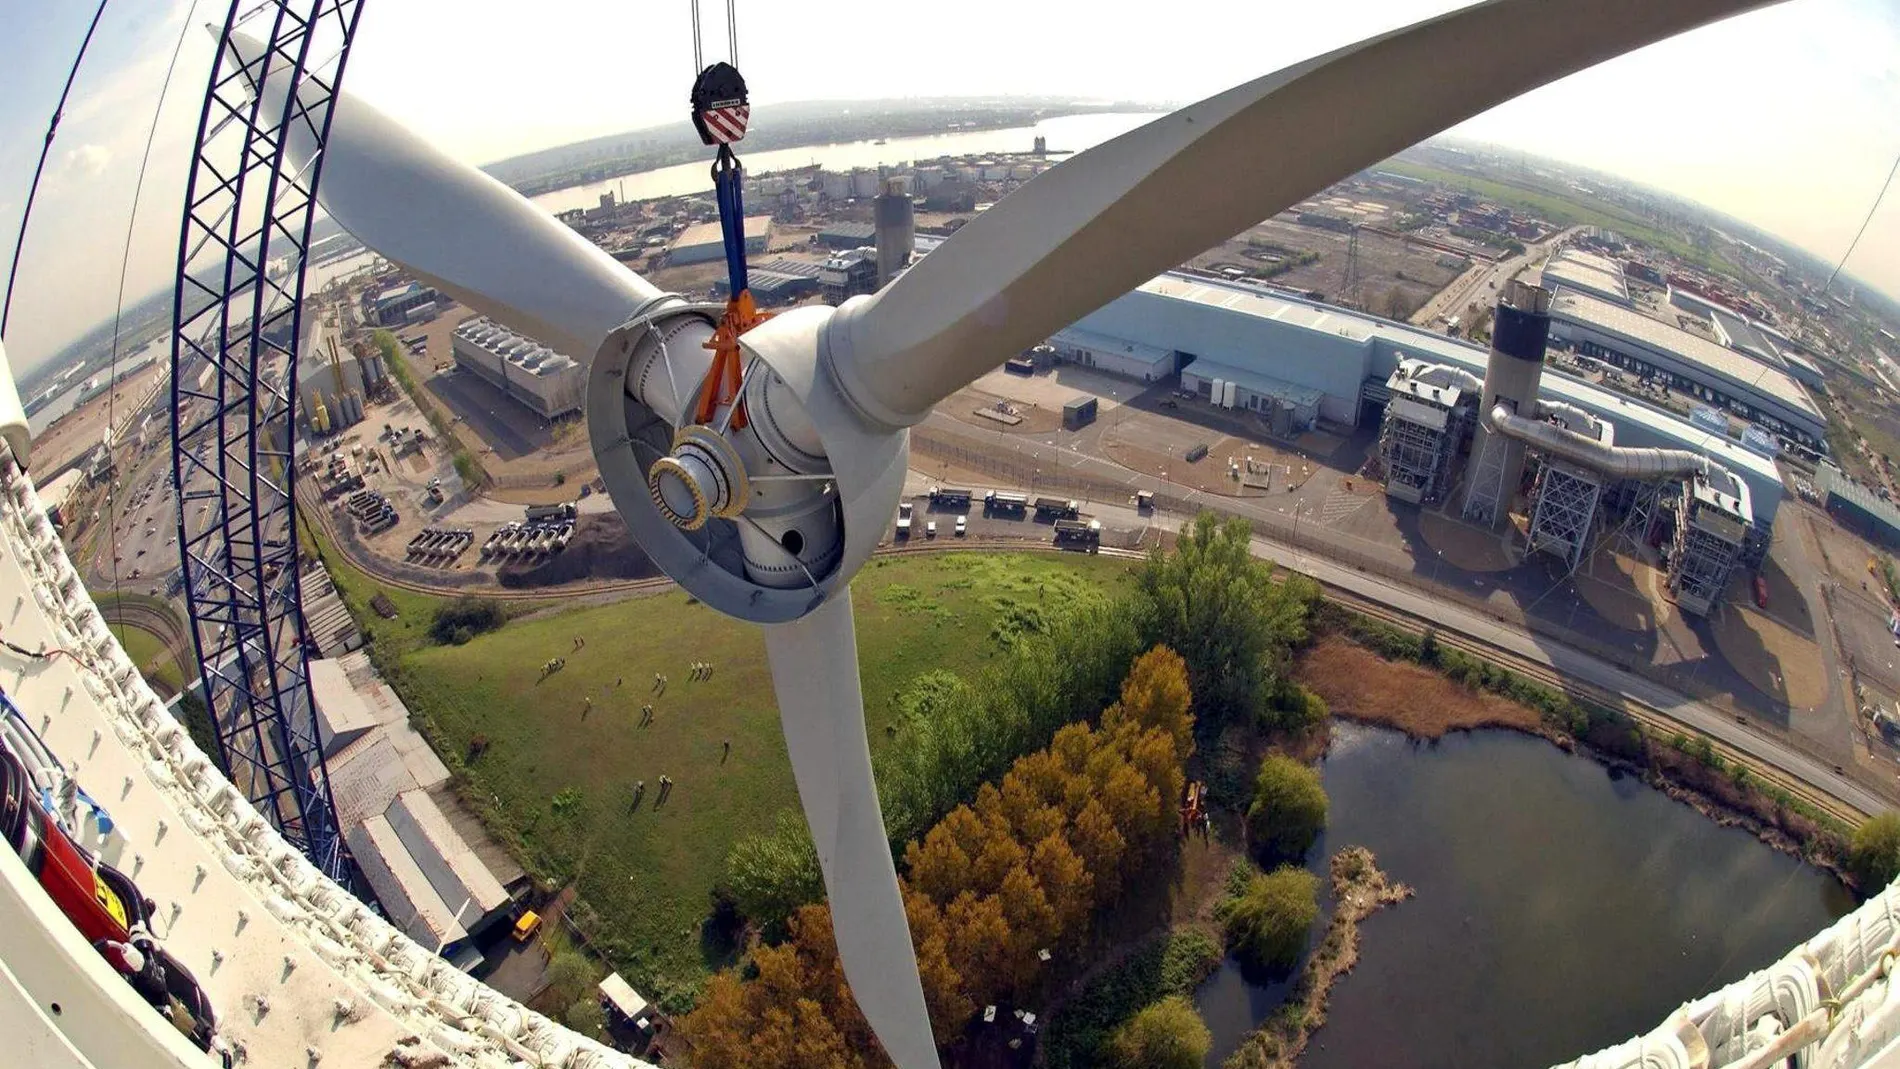 En 2019 la energía eólica suministró el 15% de la electricidad de la UE, según Wind Europe